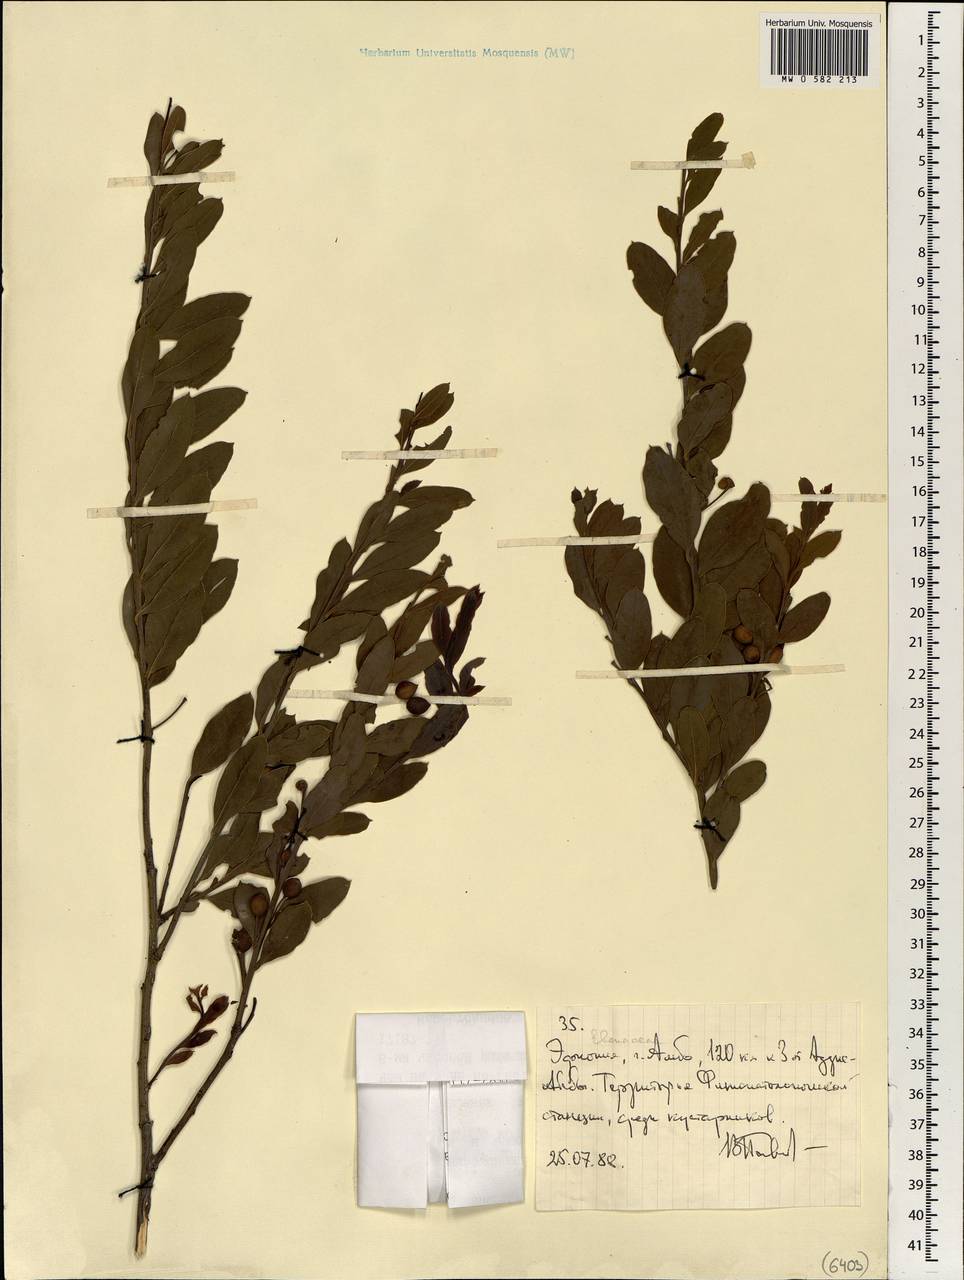 Ebenaceae, Африка (AFR) (Эфиопия)